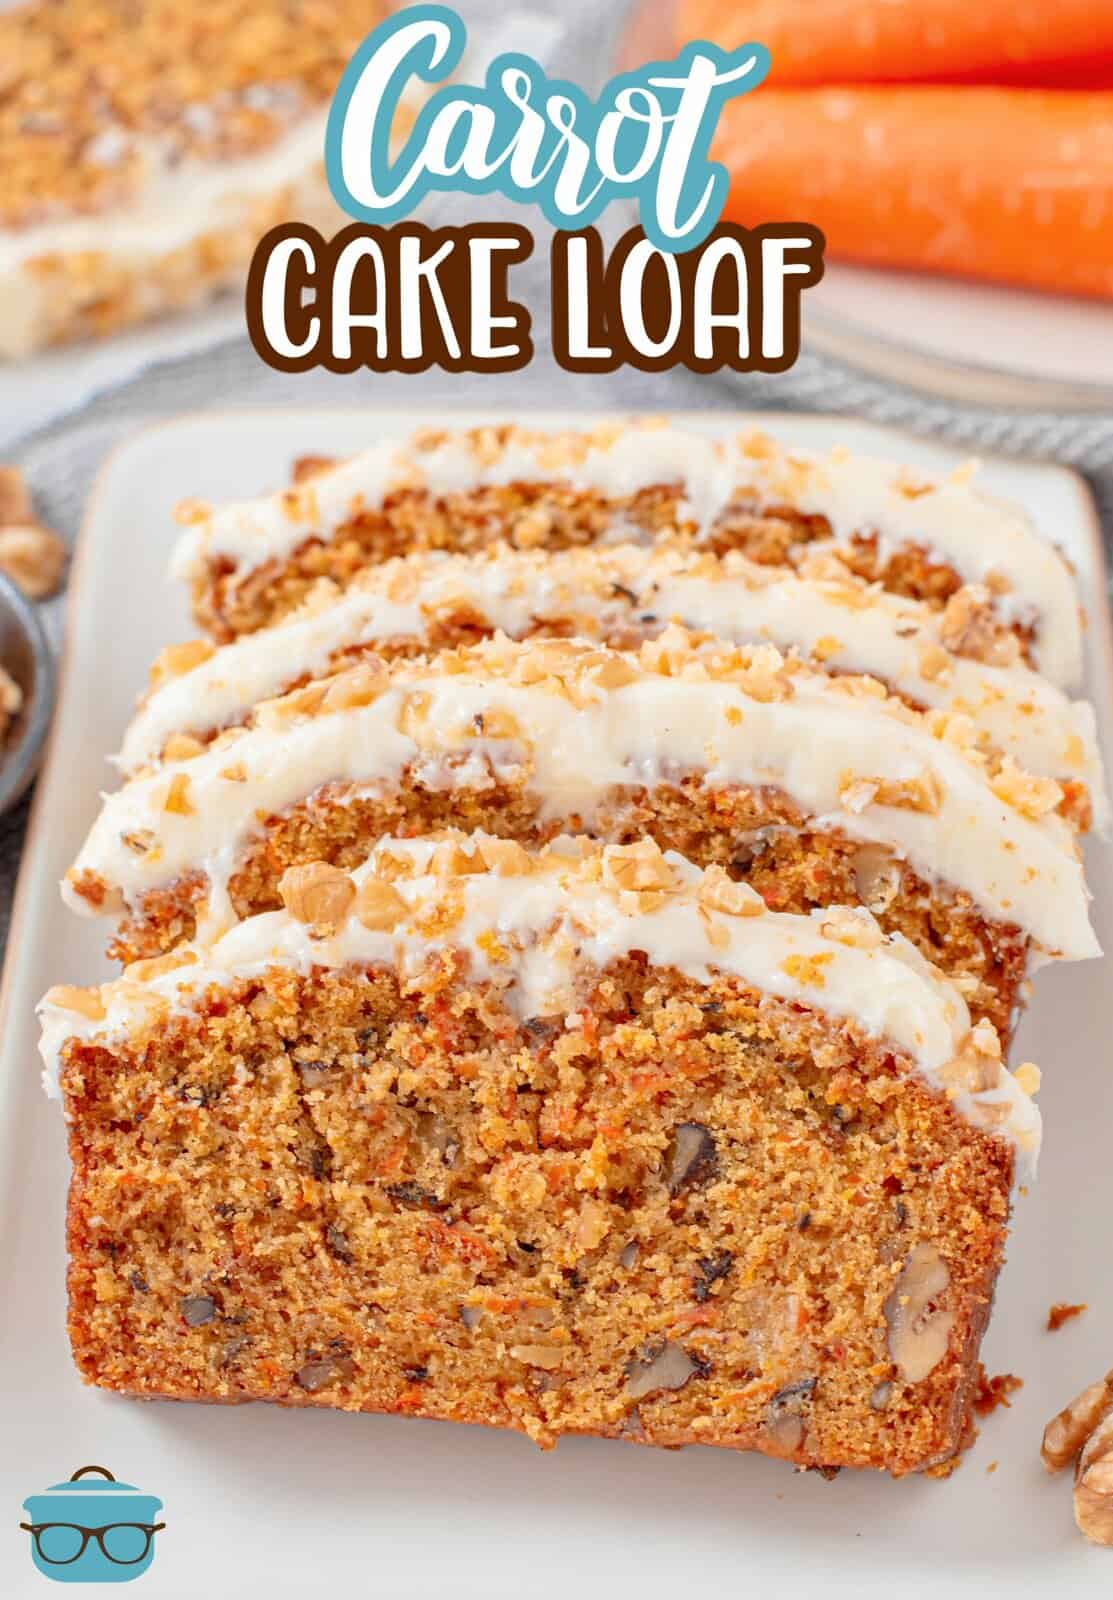 Pinterest image of finished sliced Carrot Cake Loaf on white platter.